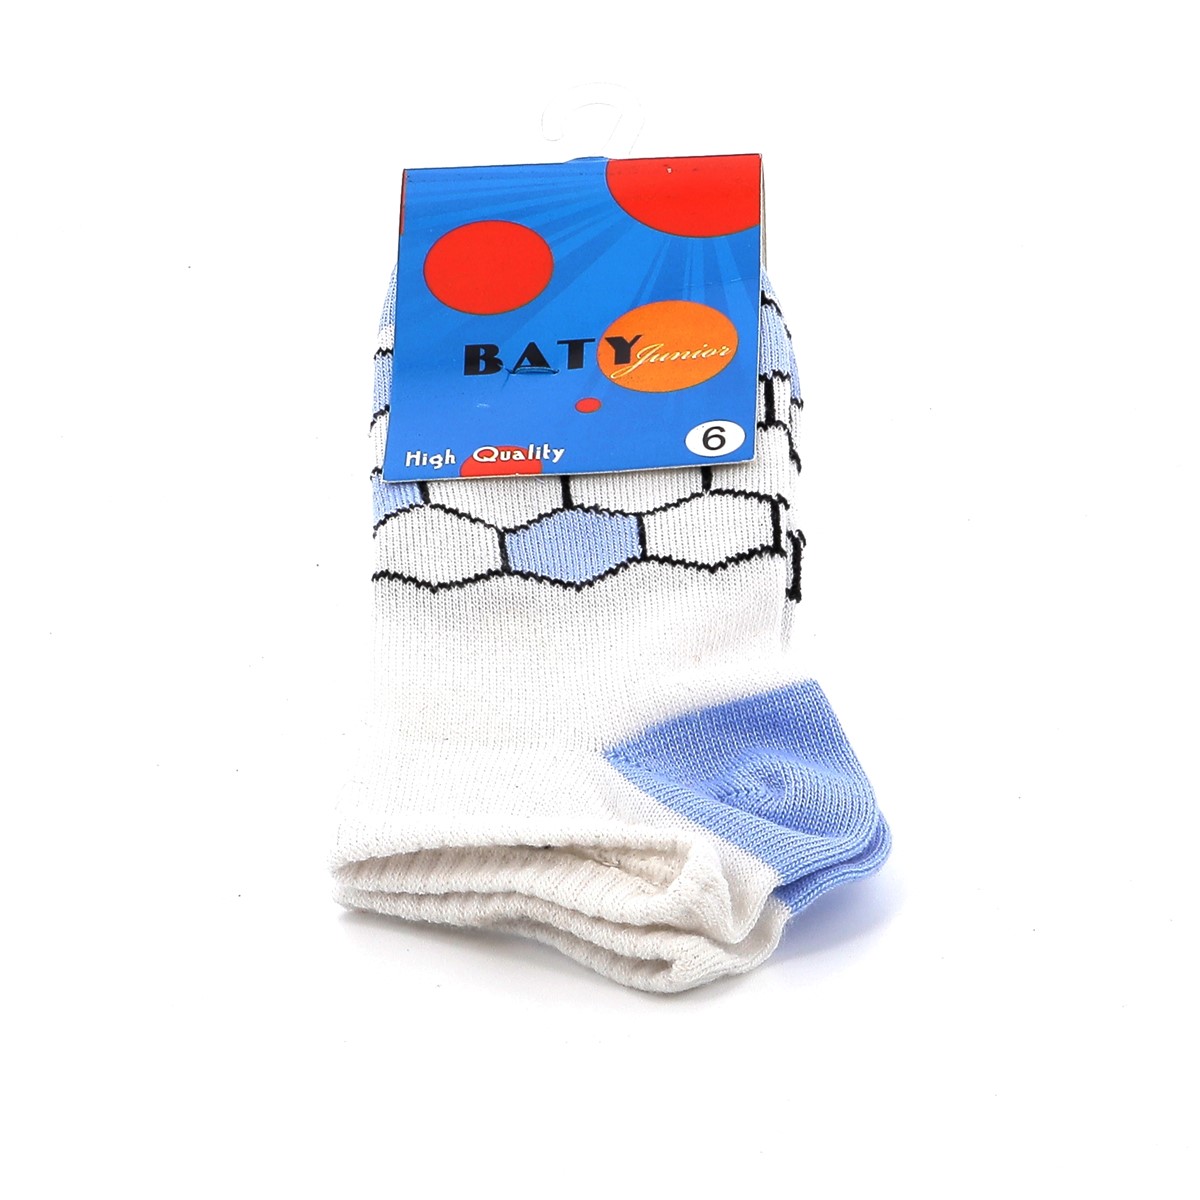 SMART Παιδικό Καλτσάκι για Αγόρι Baty Χρώματος Γαλάζιο 0033-GALAZIO